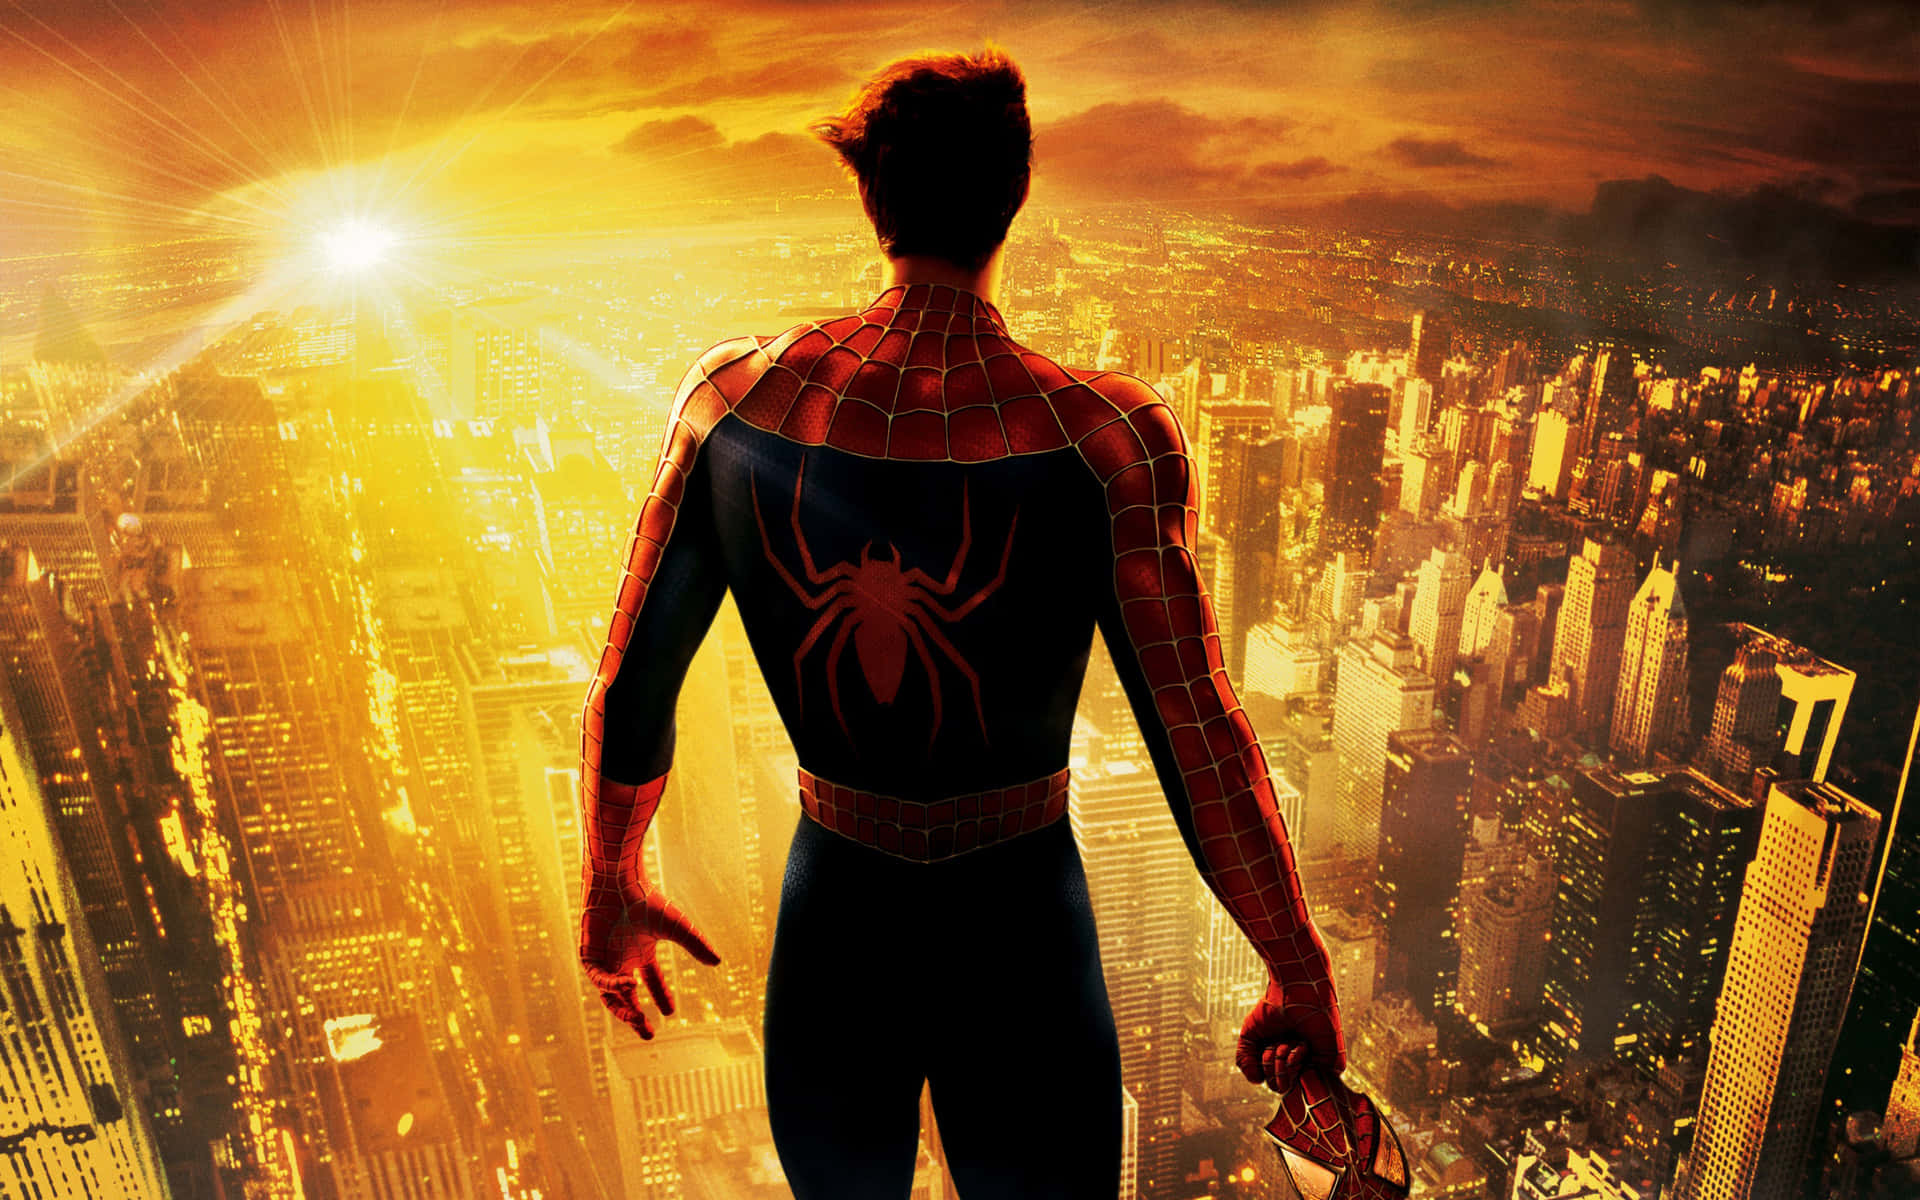 Marvelsspider-man-trilogi - Följ Med Peter Parker I Hans Episka Kamp Mot Det Onda. Wallpaper